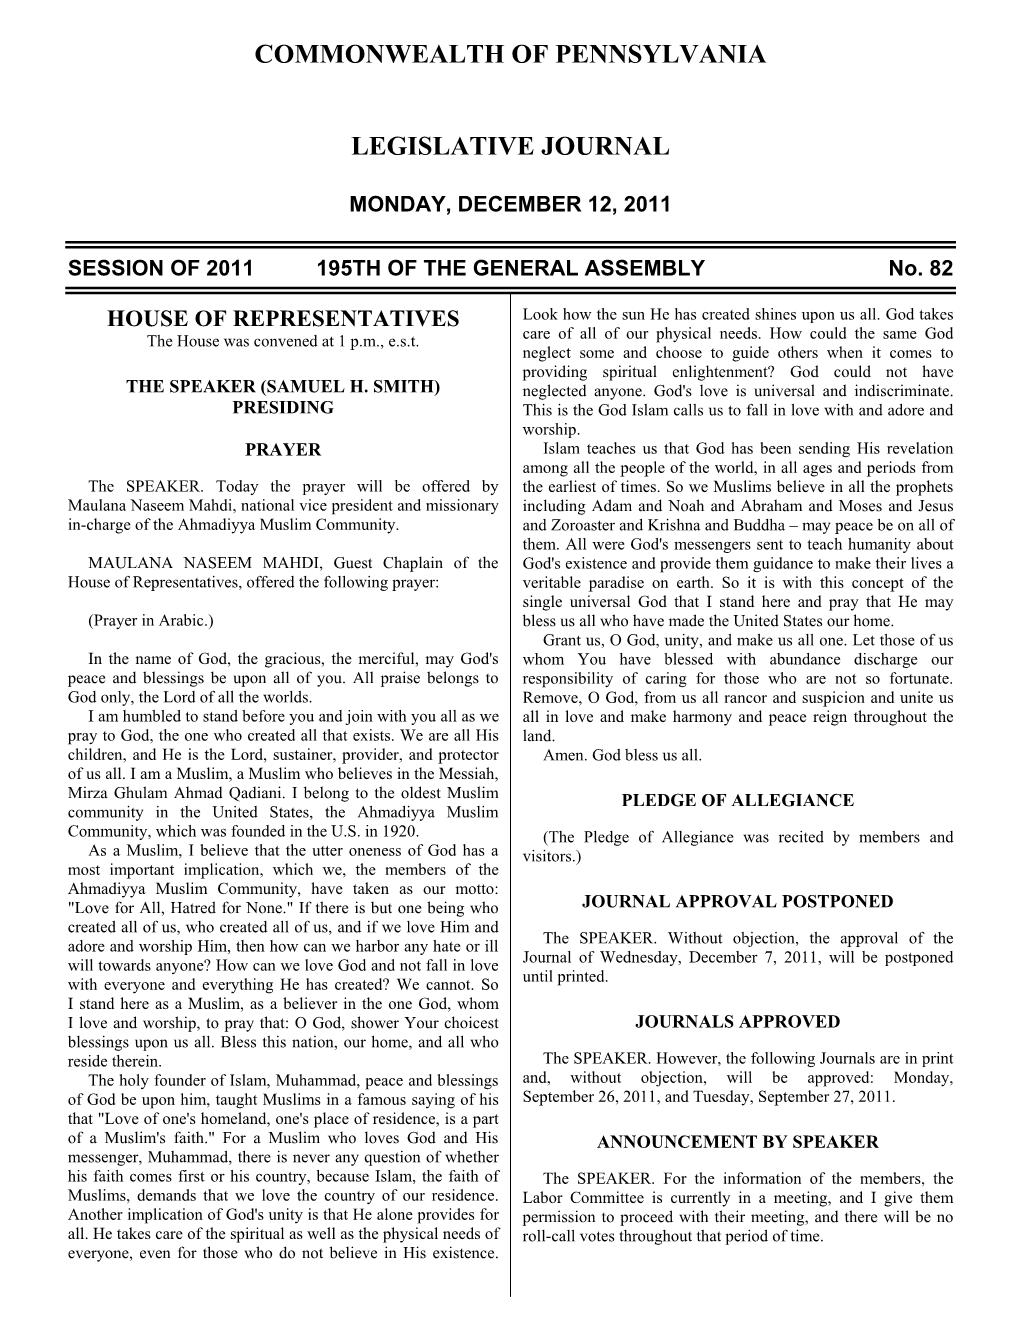 2494 Legislative Journal—House December 12